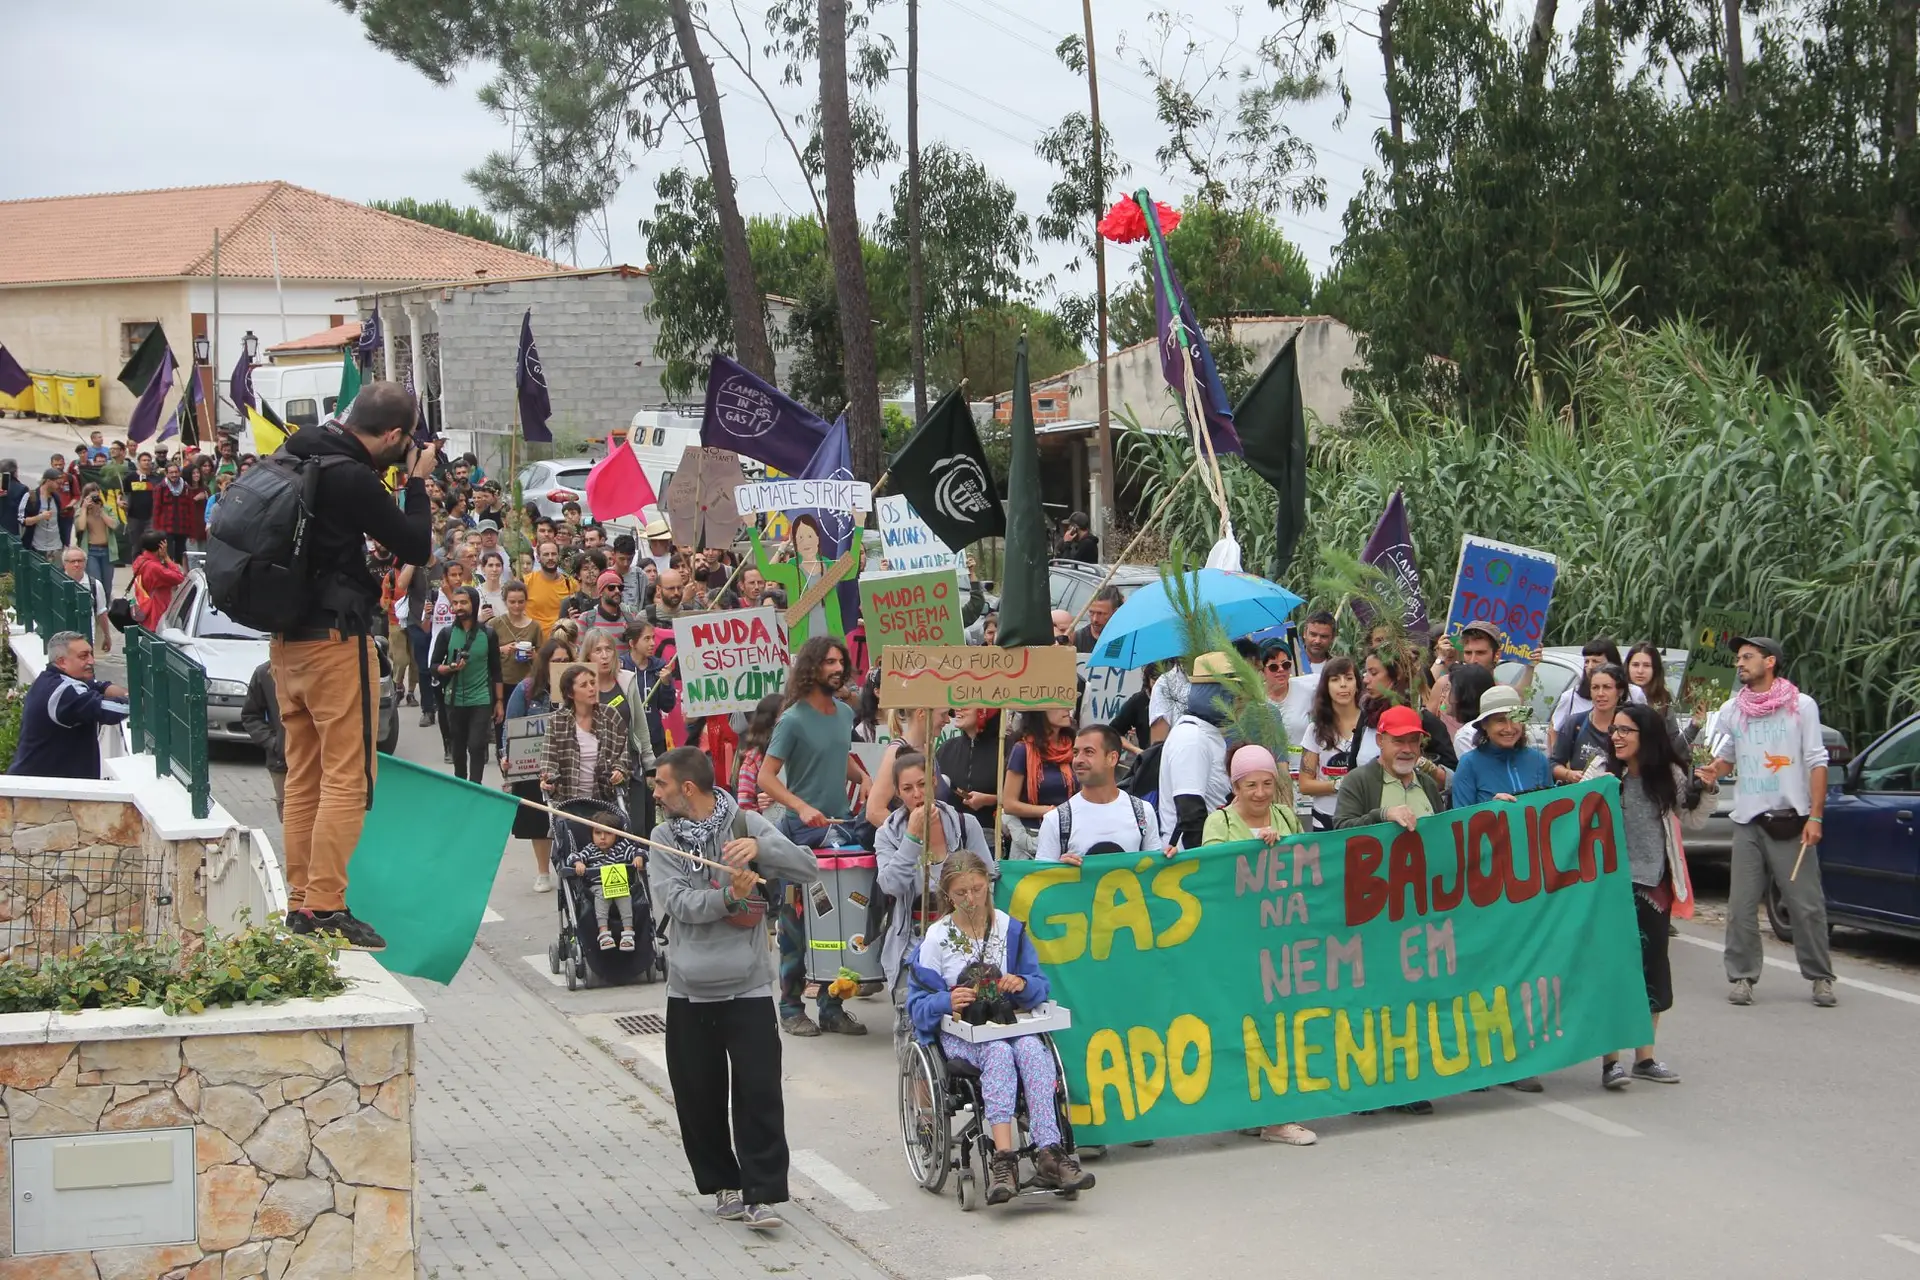 Imagem da ação de protesto realizada em julho de 2019 na Bajouca, freguesia de Leiria, onde a Australis pretendia abrir um furo de prospeção de gás.